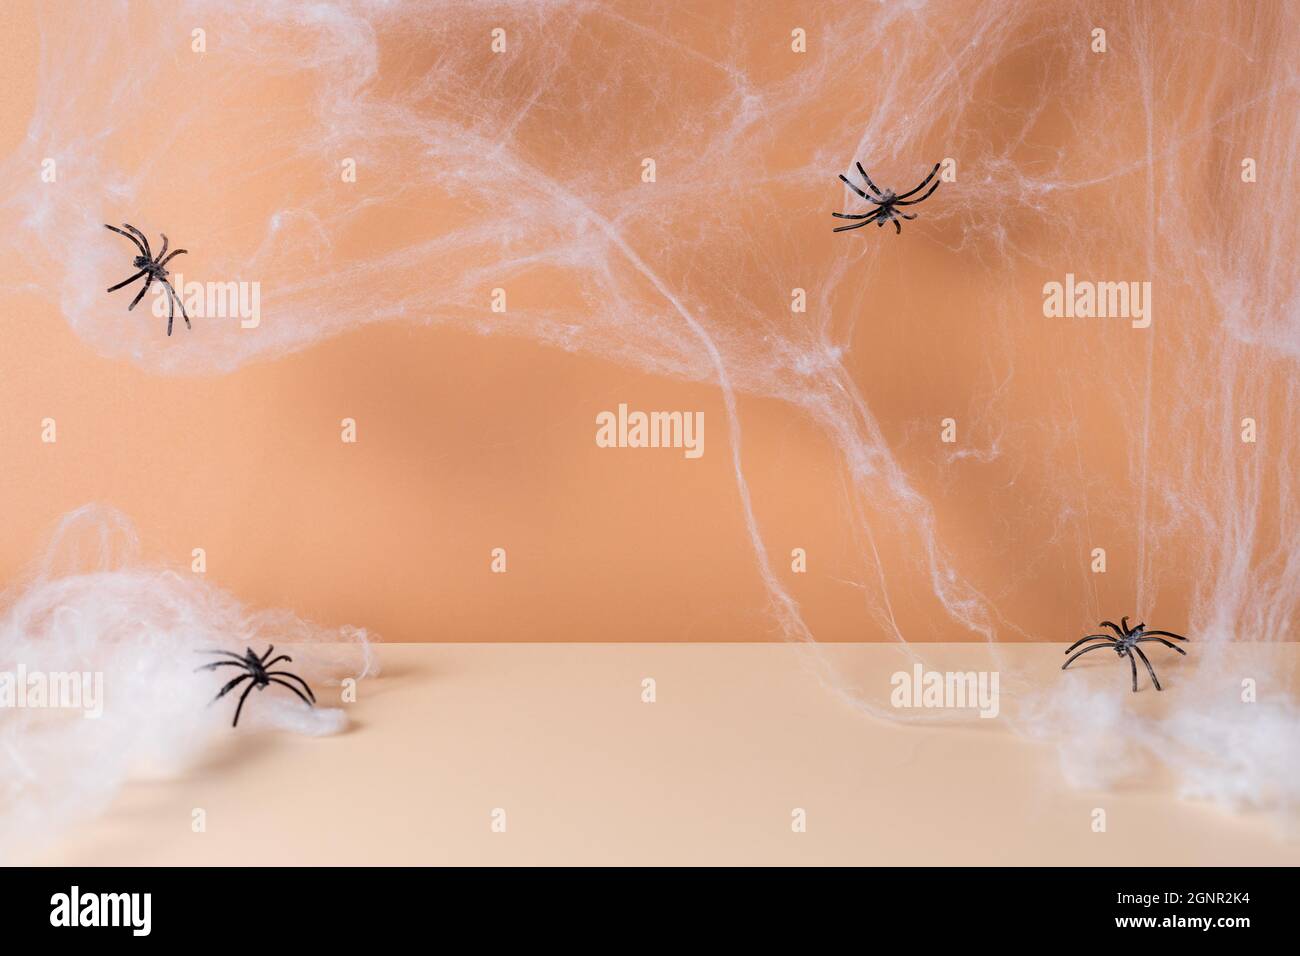 Scène moderne d'Halloween effrayante avec toile d'araignée et araignées Banque D'Images